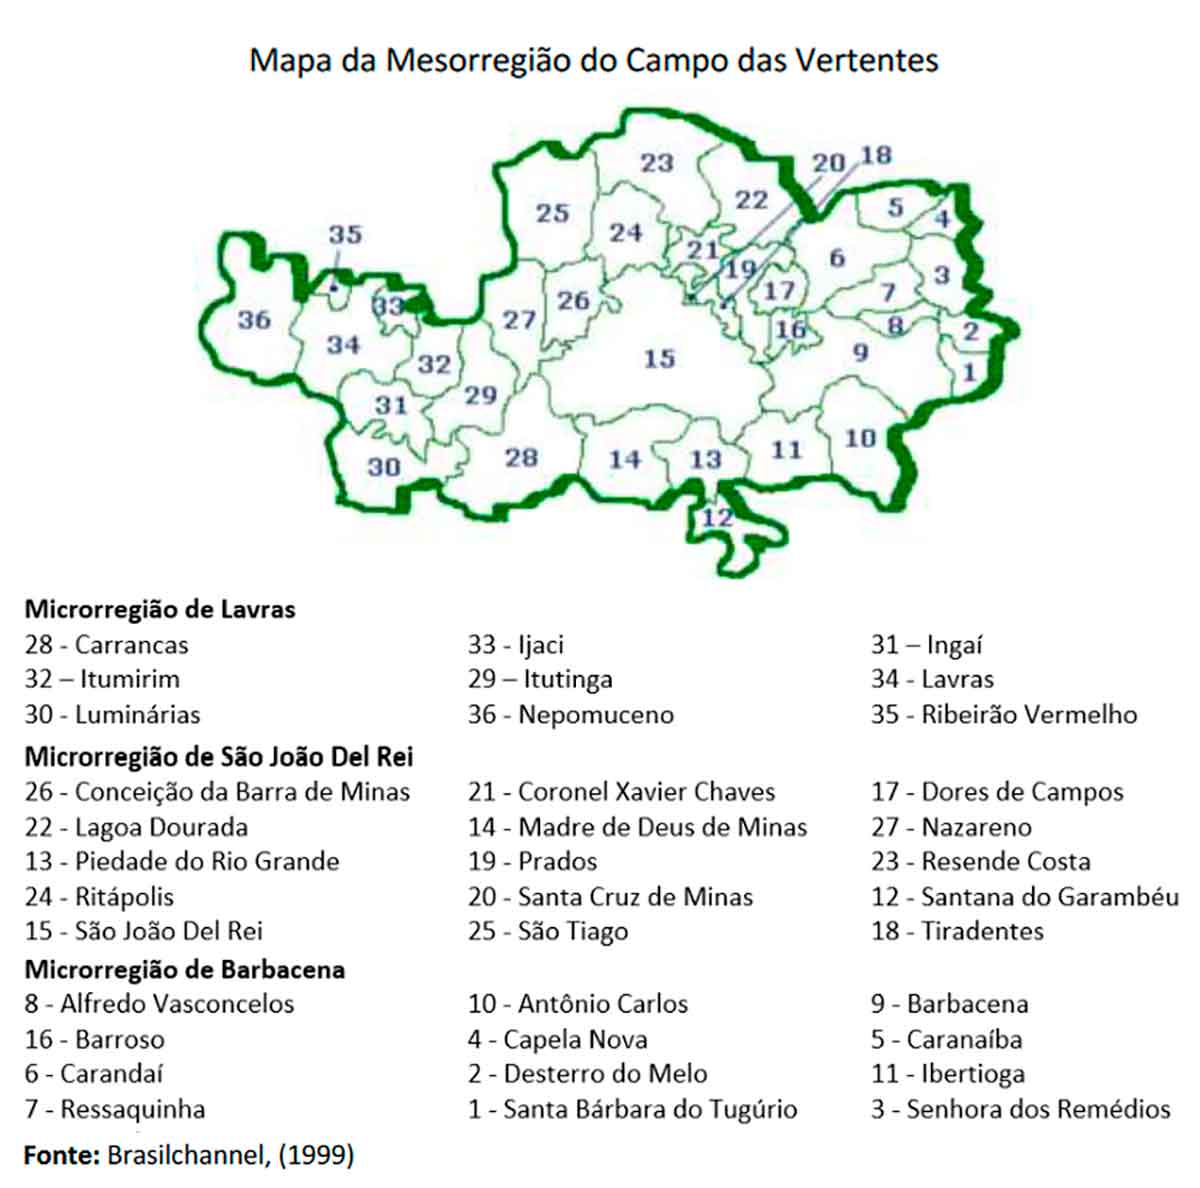 Mapa detalhando a Região do Campo das Vertentes, destacando os municípios que a compõem